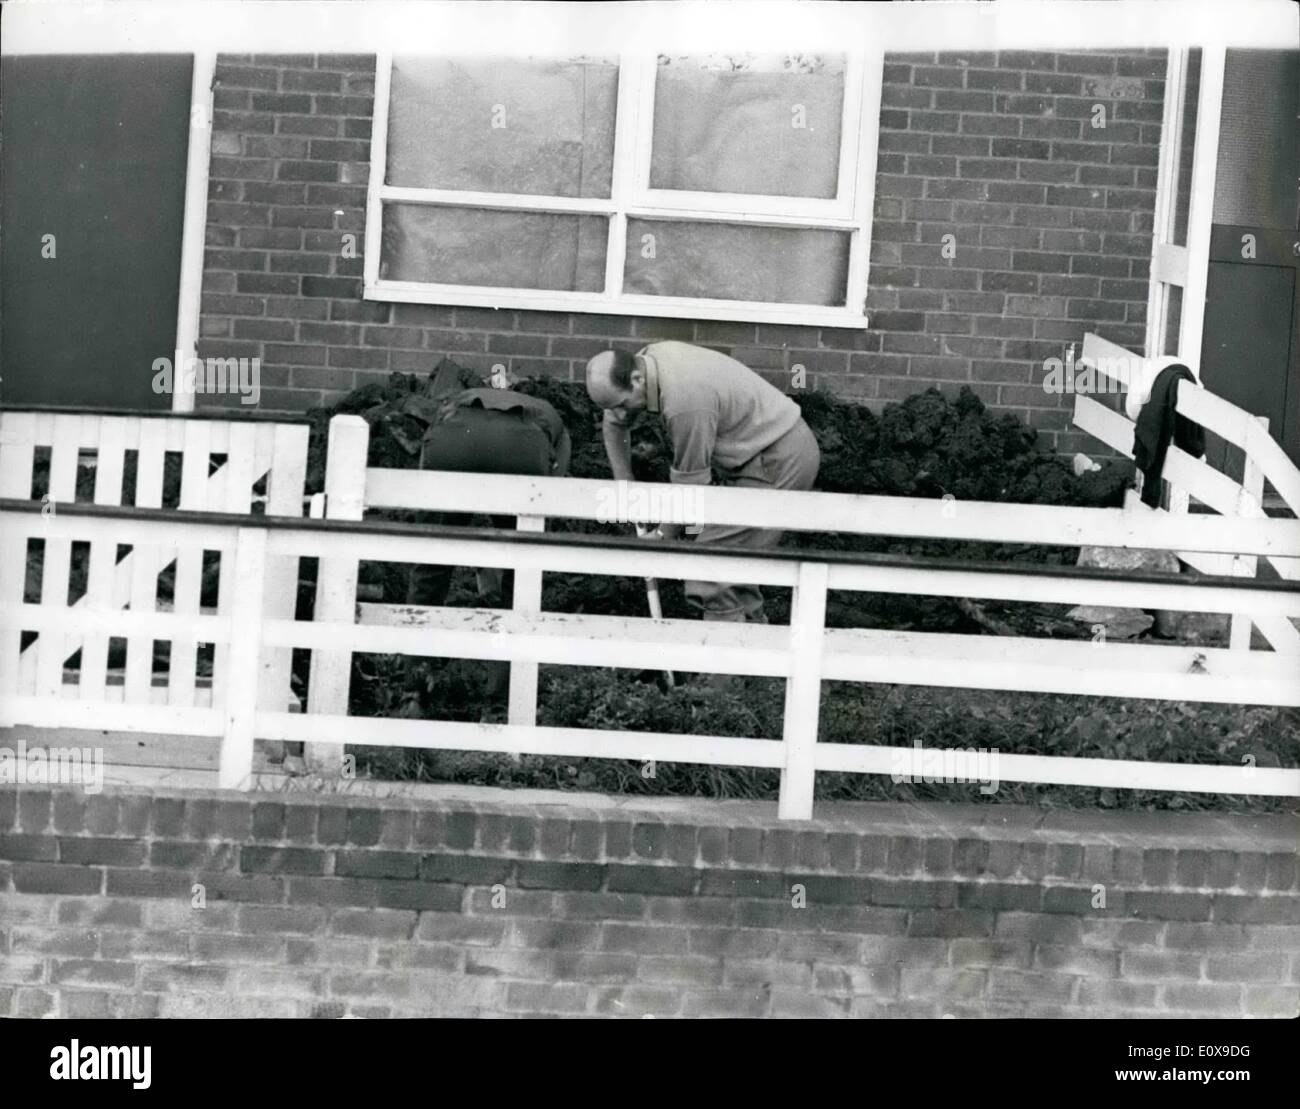 Ottobre 10, 1965 - giovane accusato di aver ucciso 10-Year-Old ragazza trovato sepolto sulla Pennine Moors: un giovane uomo e donna sono stati accusati di aver ucciso 10-anno-vecchio Lesley Downey, il cui corpo è stato trovato sepolto sulla Penine Morrs ultimo week-end. L'uomo era di 27-anno-vecchio Ian Brady, e la donna è stata di 23-anno-vecchio Myra Hindley, una stenografia dattilografo. La foto mostra il detective sono visti scavando nel giardino di una casa a la overspill sobborgo a Hattersley, Hyde, la casa di Ian Brady. Foto Stock